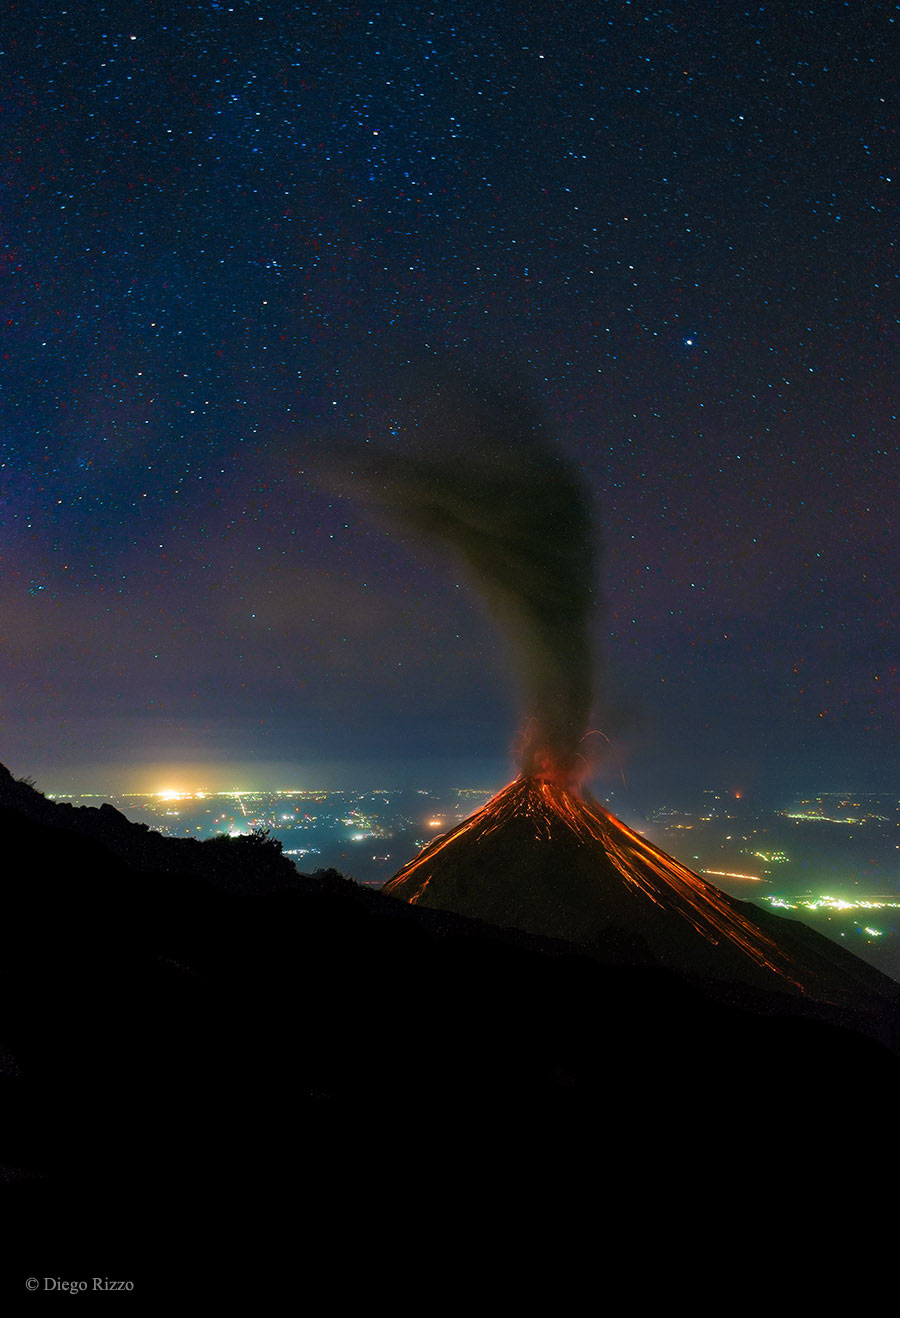 Izverzhenie Ognennogo vulkana pod zvezdnym nebom